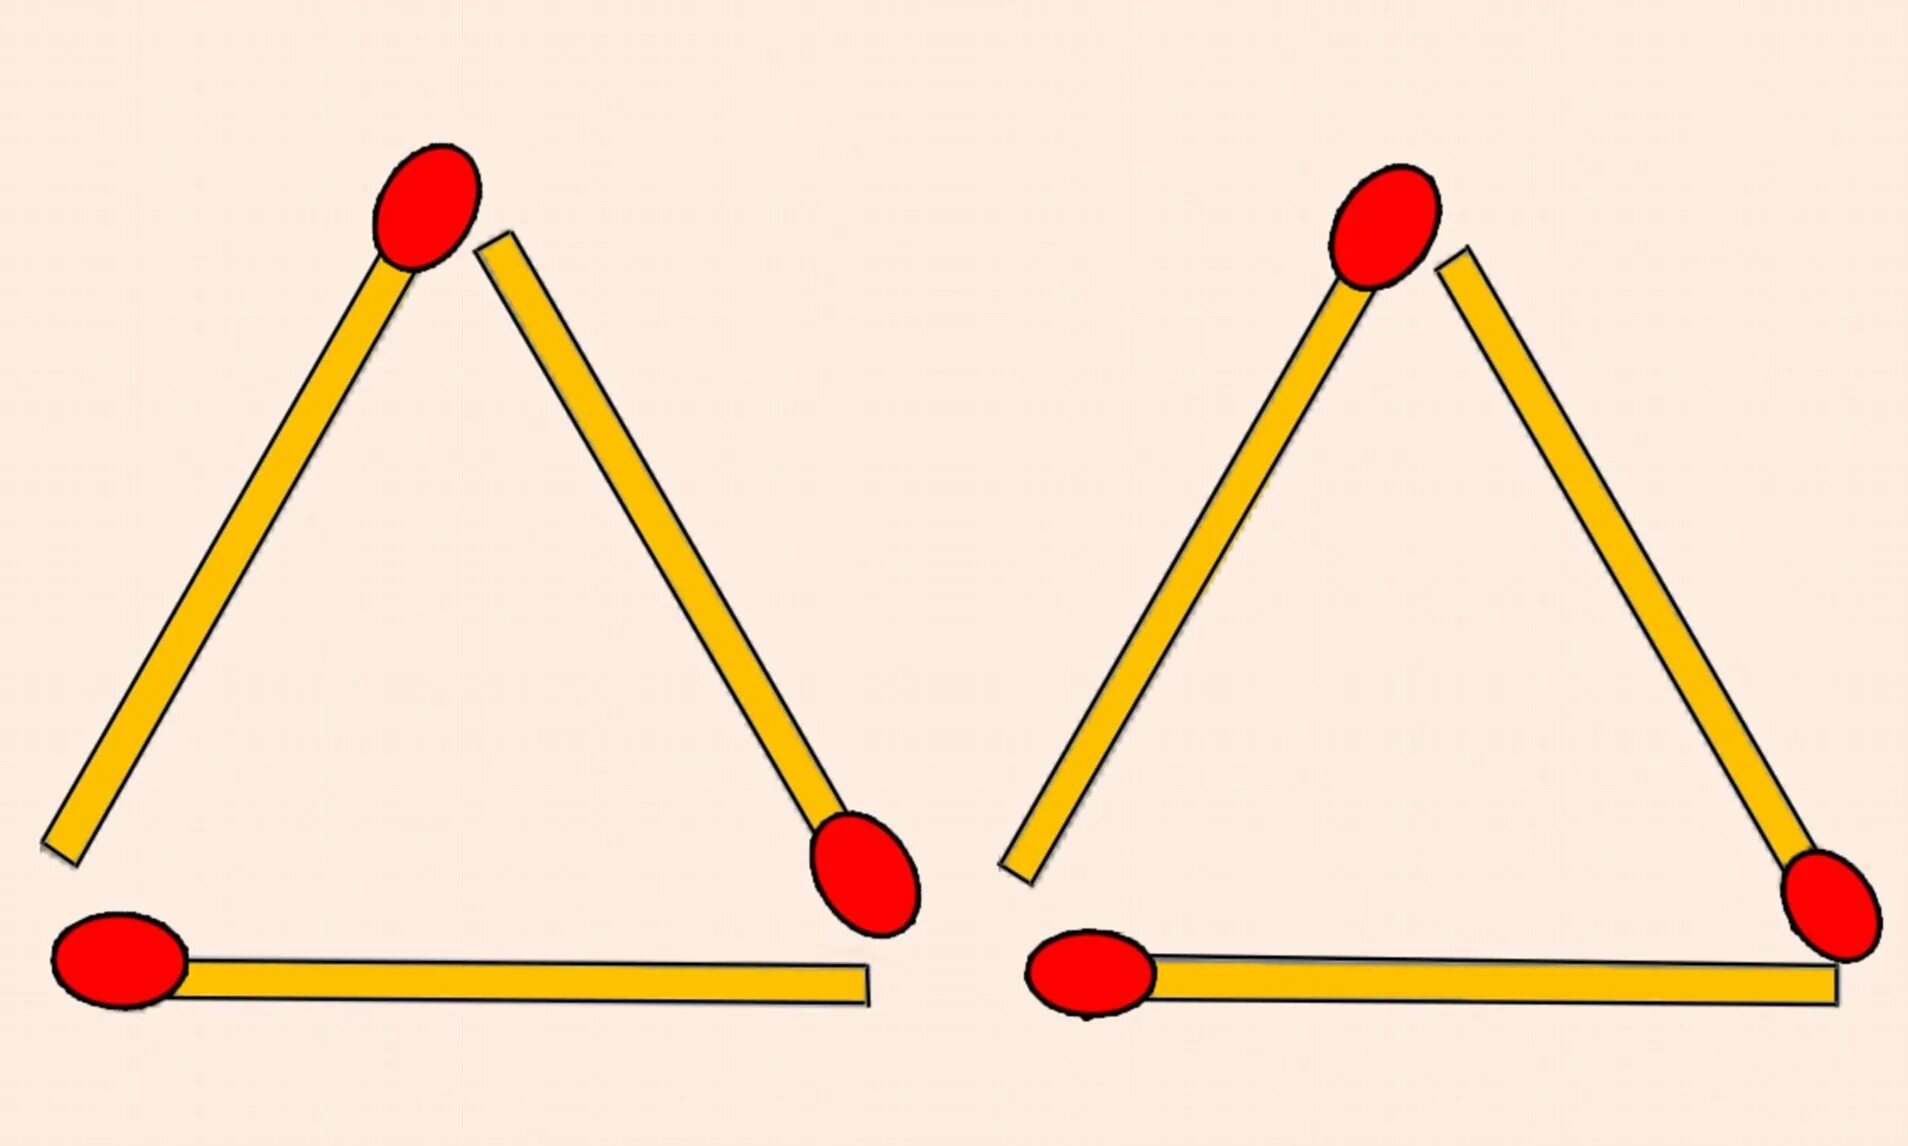 Треугольник из палочек. Фигуры из палочек. Треугольник из спичек. Utjvtnhbxtcrbt abuuehs BP cgbxtr. Из 6 спичек можно